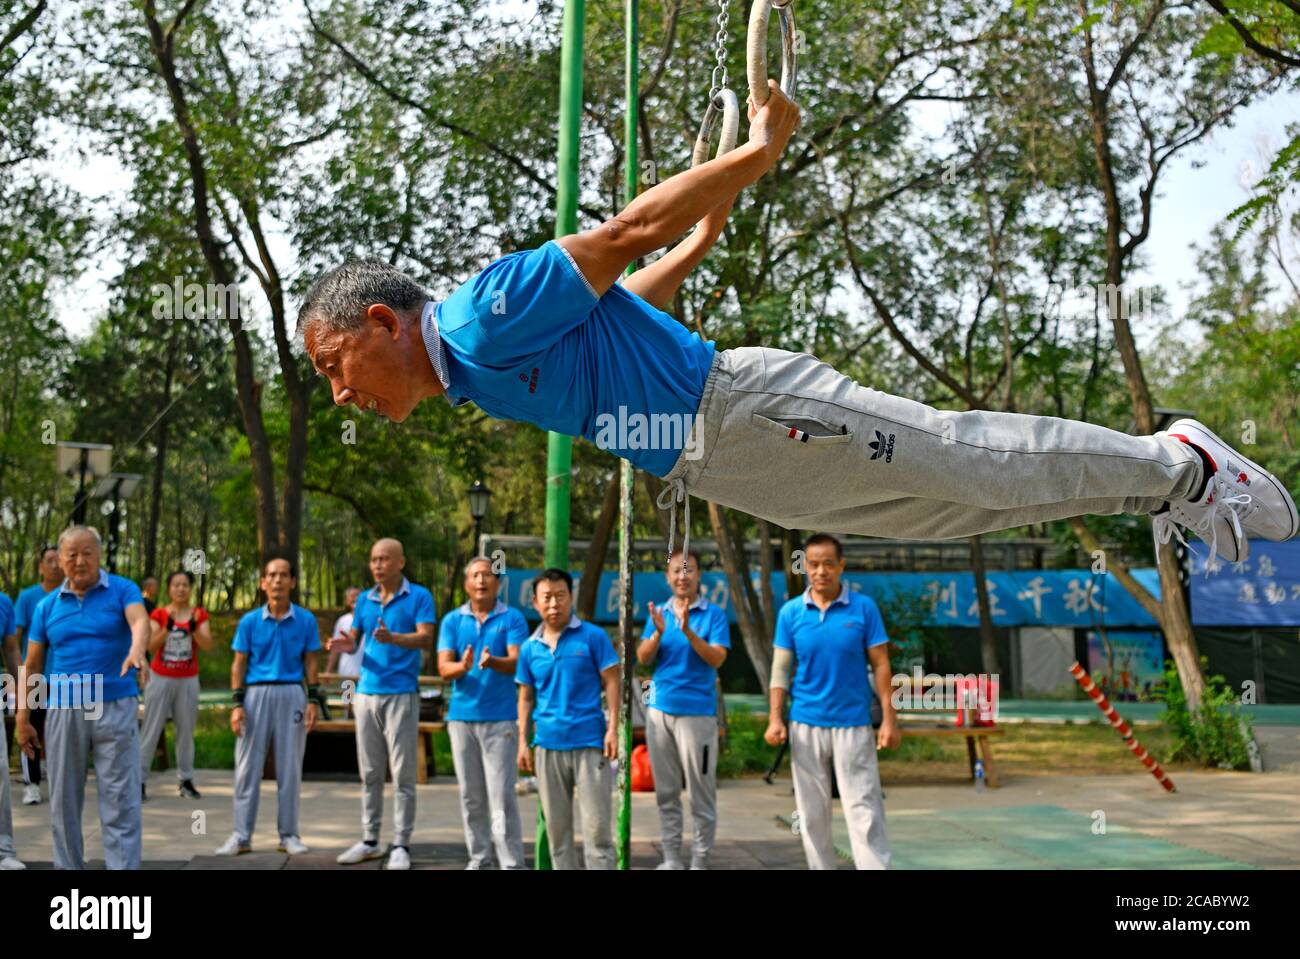 (200806) -- TIANJIN, 6 août 2020 (Xinhua) -- Xu Chongqing, 67 ans, pratique la gymnastique au parc Xigu, dans le nord de la Chine, Tianjin, 4 août 2020. Un groupe de personnes âgées a formé une équipe de gymnastique à Tianjin il y a dix ans. Ils ont pratiqué régulièrement comme exercice physique quotidien. L'équipe compte maintenant plus de 20 membres, avec une moyenne d'âge de 68 ans. « l'exercice nous permet de maintenir un bon état physique, ce qui est très utile pour améliorer la qualité de vie. » a déclaré Tong Yugen, le chef d'équipe âgé de 66 ans. Au fur et à mesure que l'équipe devient plus connue, plus de 100 amateurs de fitness les ont rejoints dans l'exercice quotidien. Banque D'Images